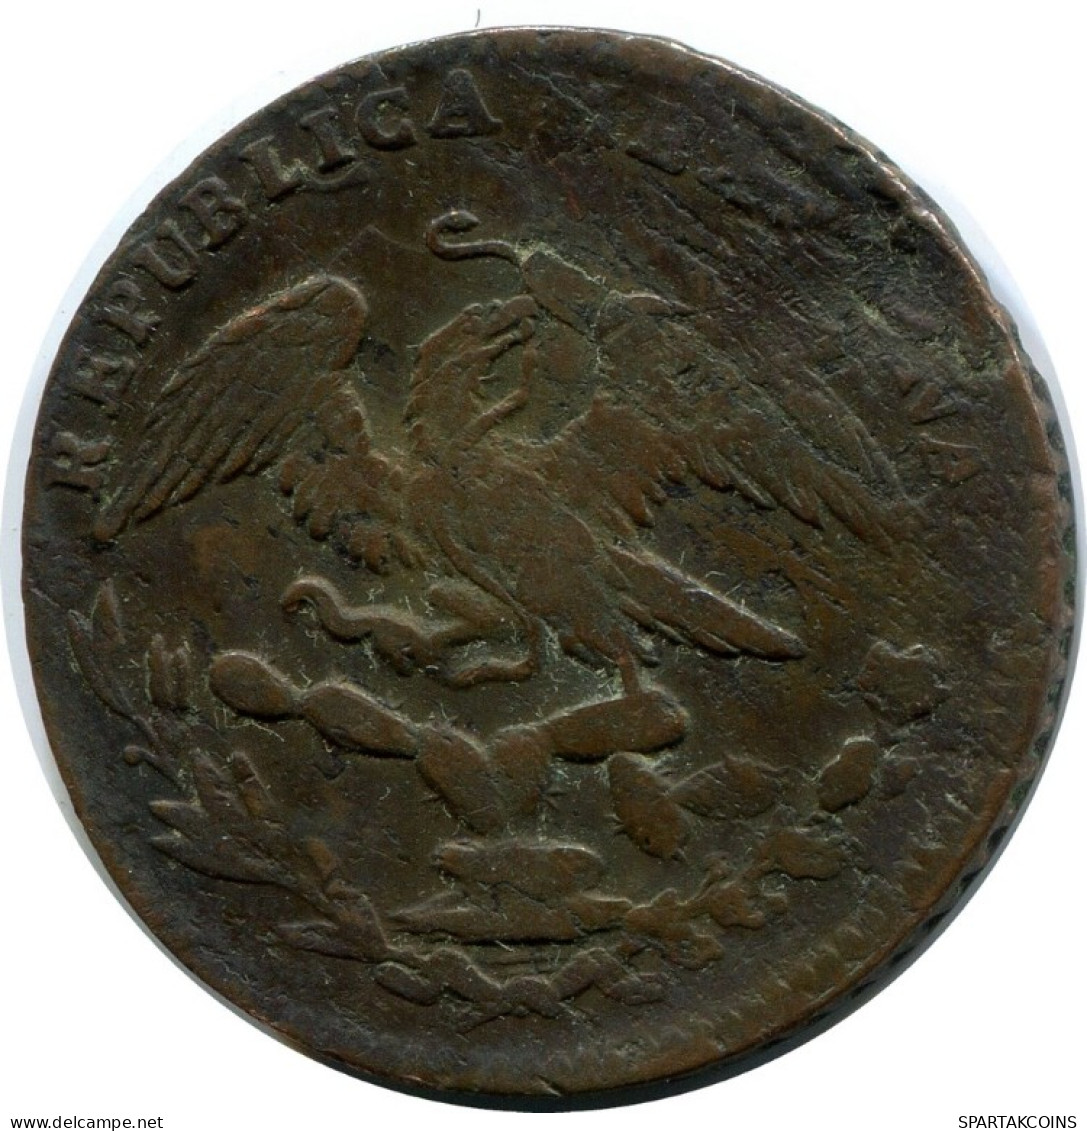 1/4 REAL 1835 MA "Quarto/Quartilla" MEXICO Coin #AH387.5.U.A - México